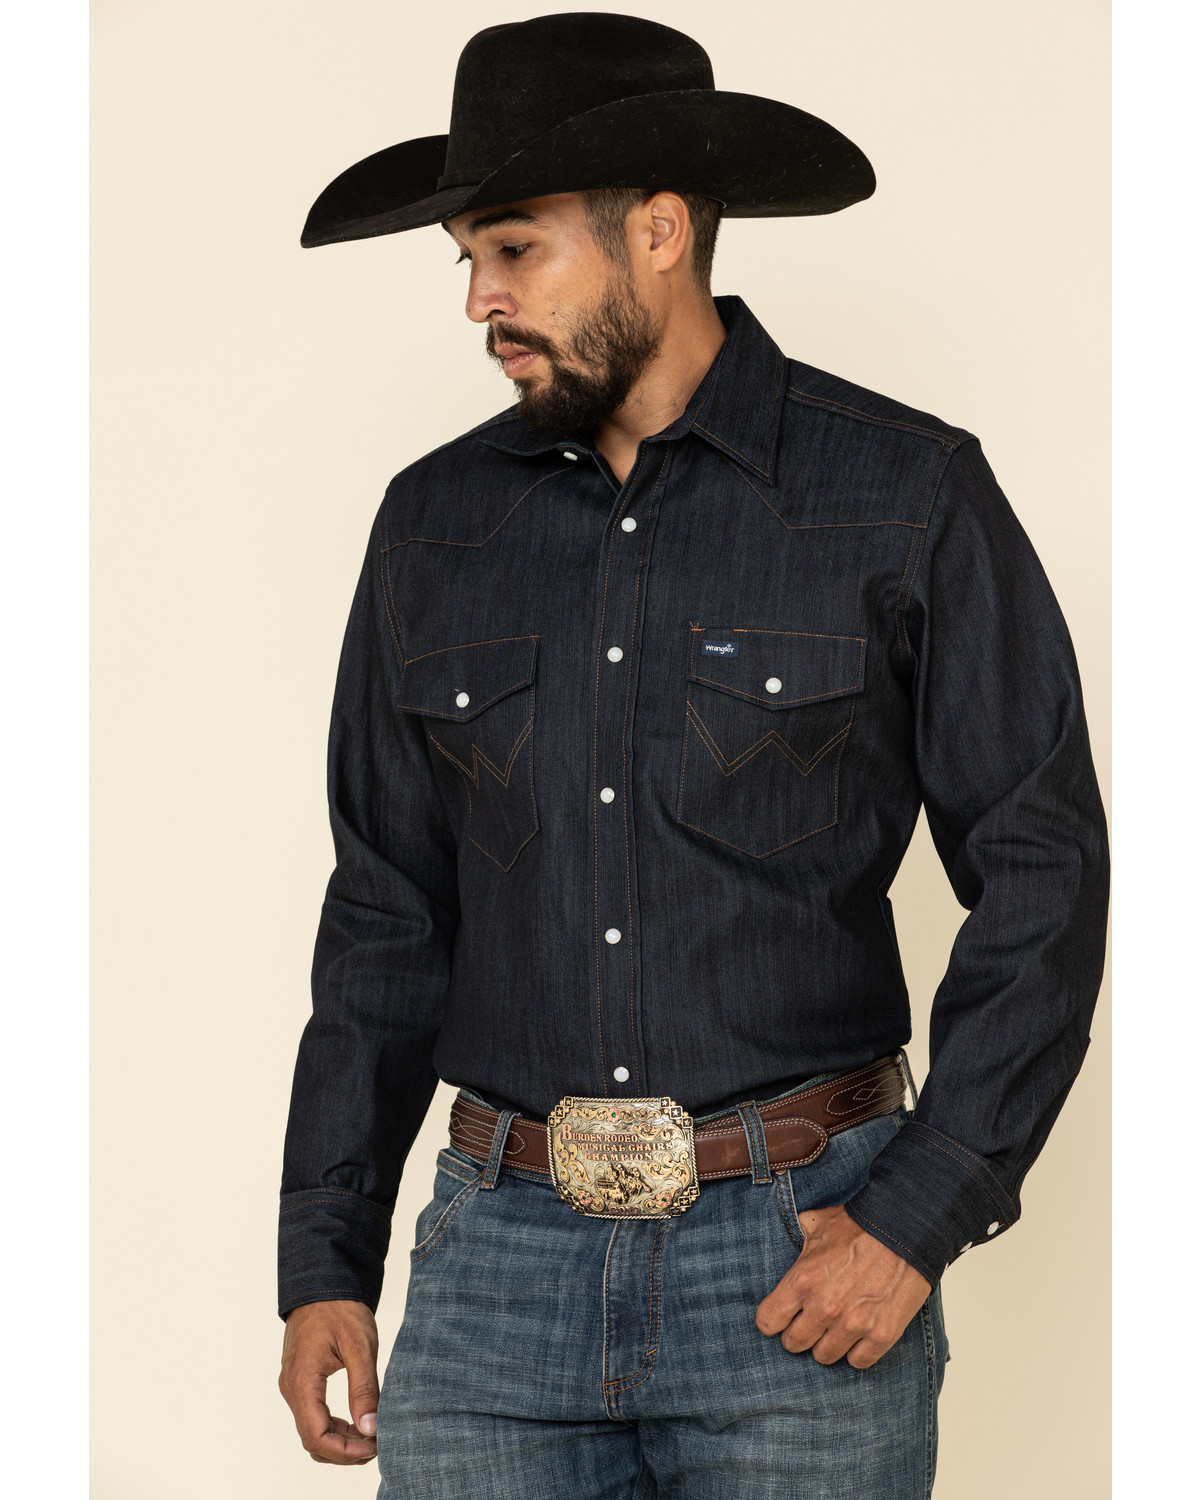 Wrangler Men/'s Western Denim Shirt Long Sleeved